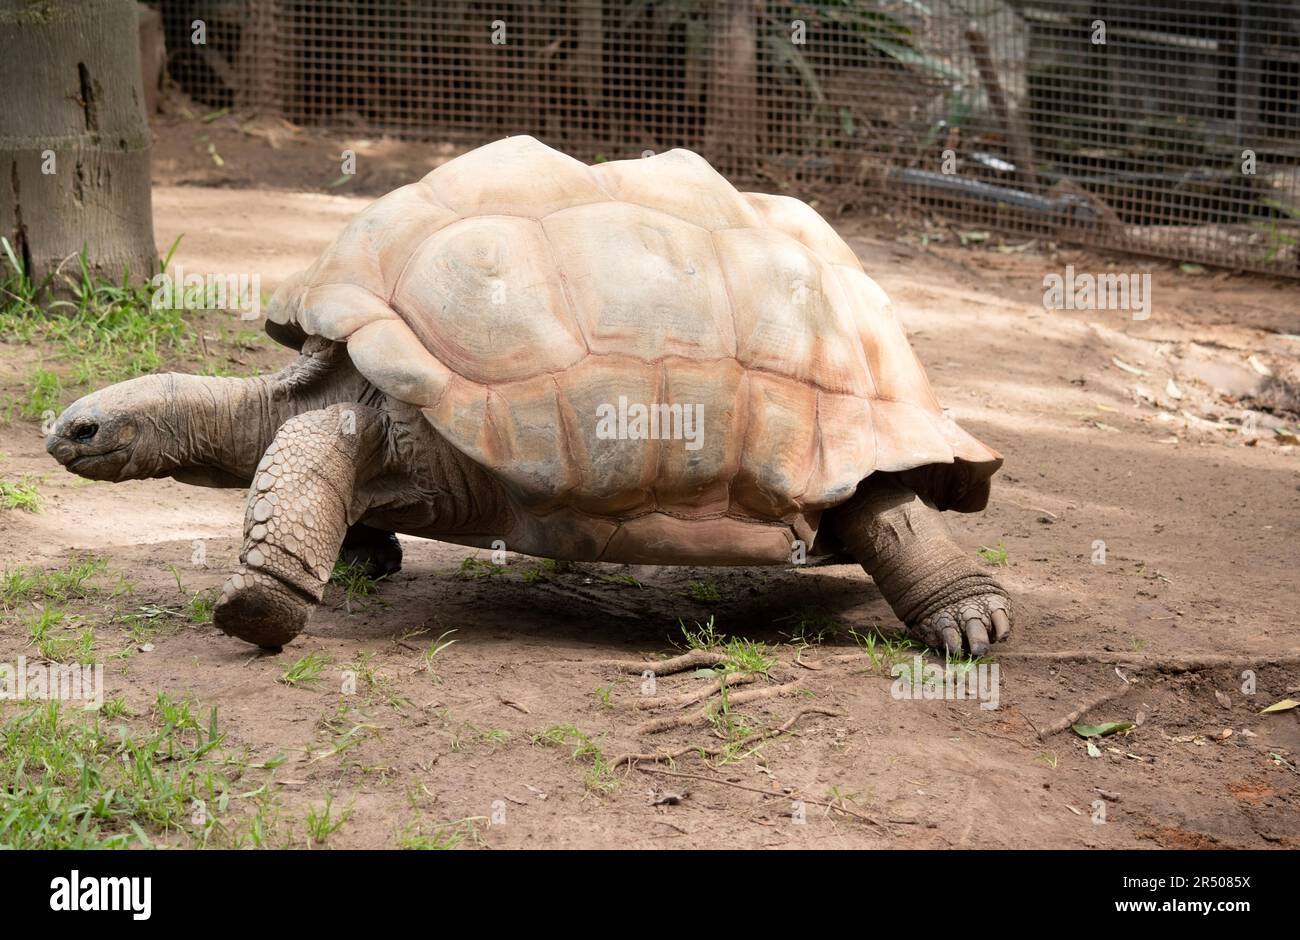 Les tortues géantes Aldabra sont principalement actives en début de matinée et en fin de soirée et passent le reste de la journée dans des terriers ou des marais Banque D'Images